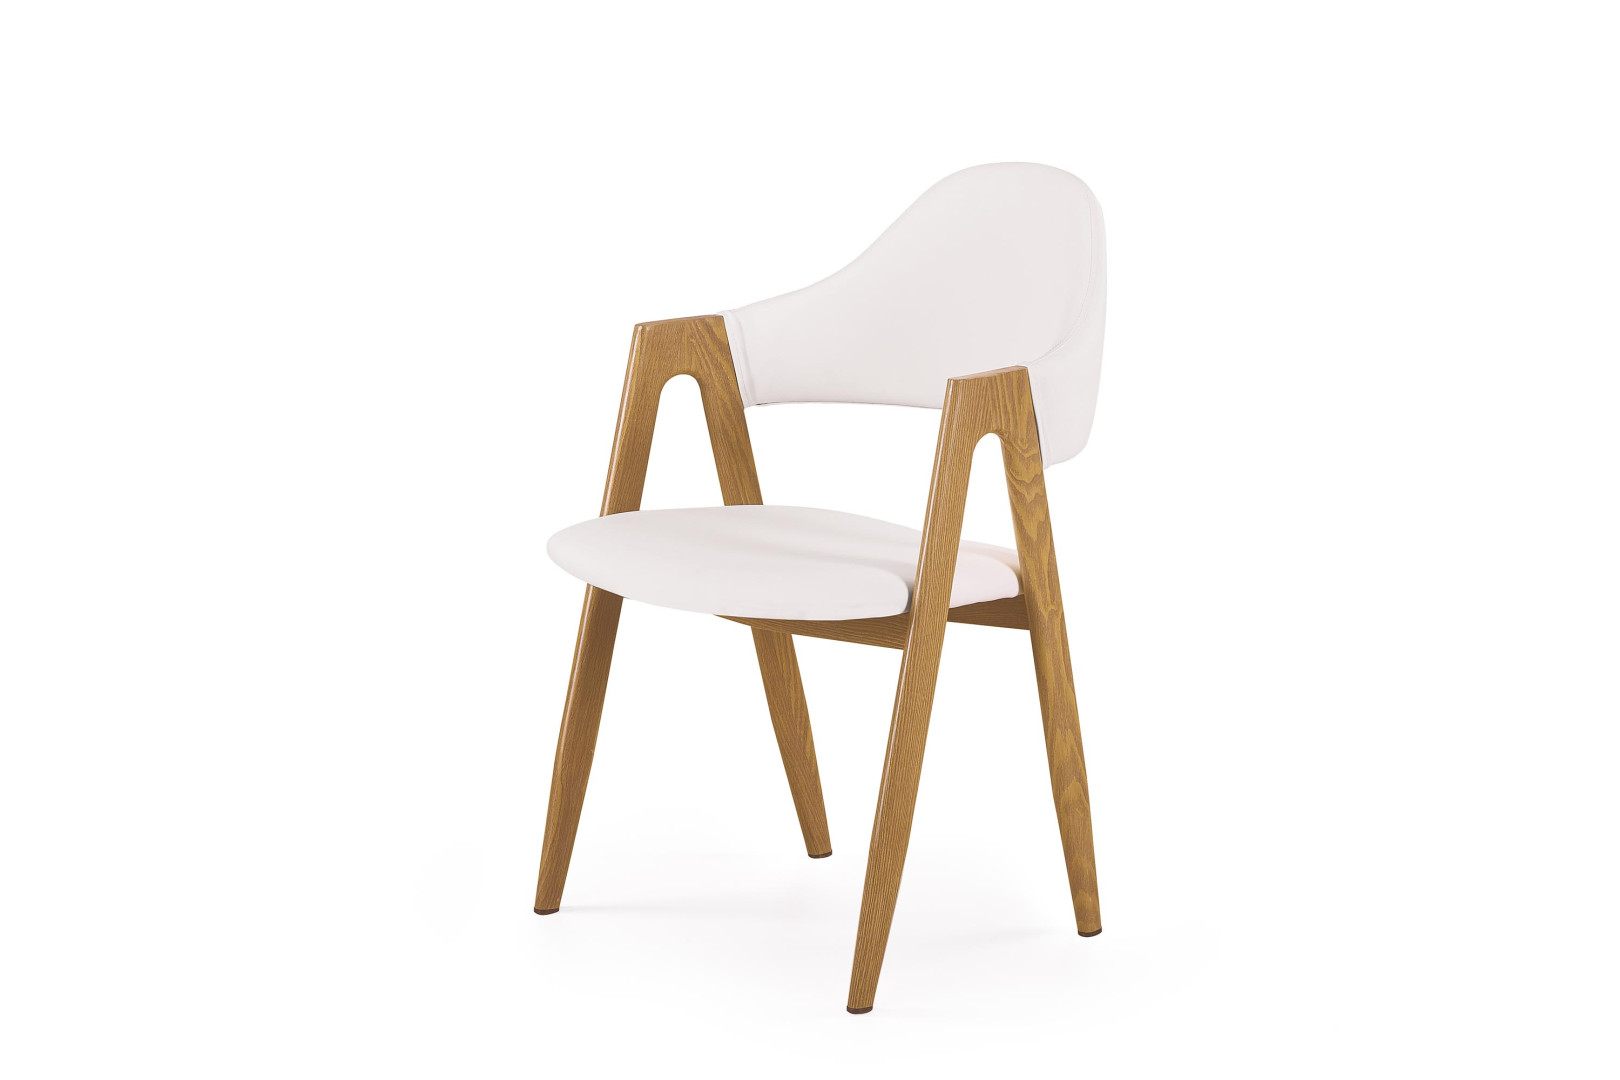 nazwa produktu: Eleganckie krzesło biurkowe K247 białe